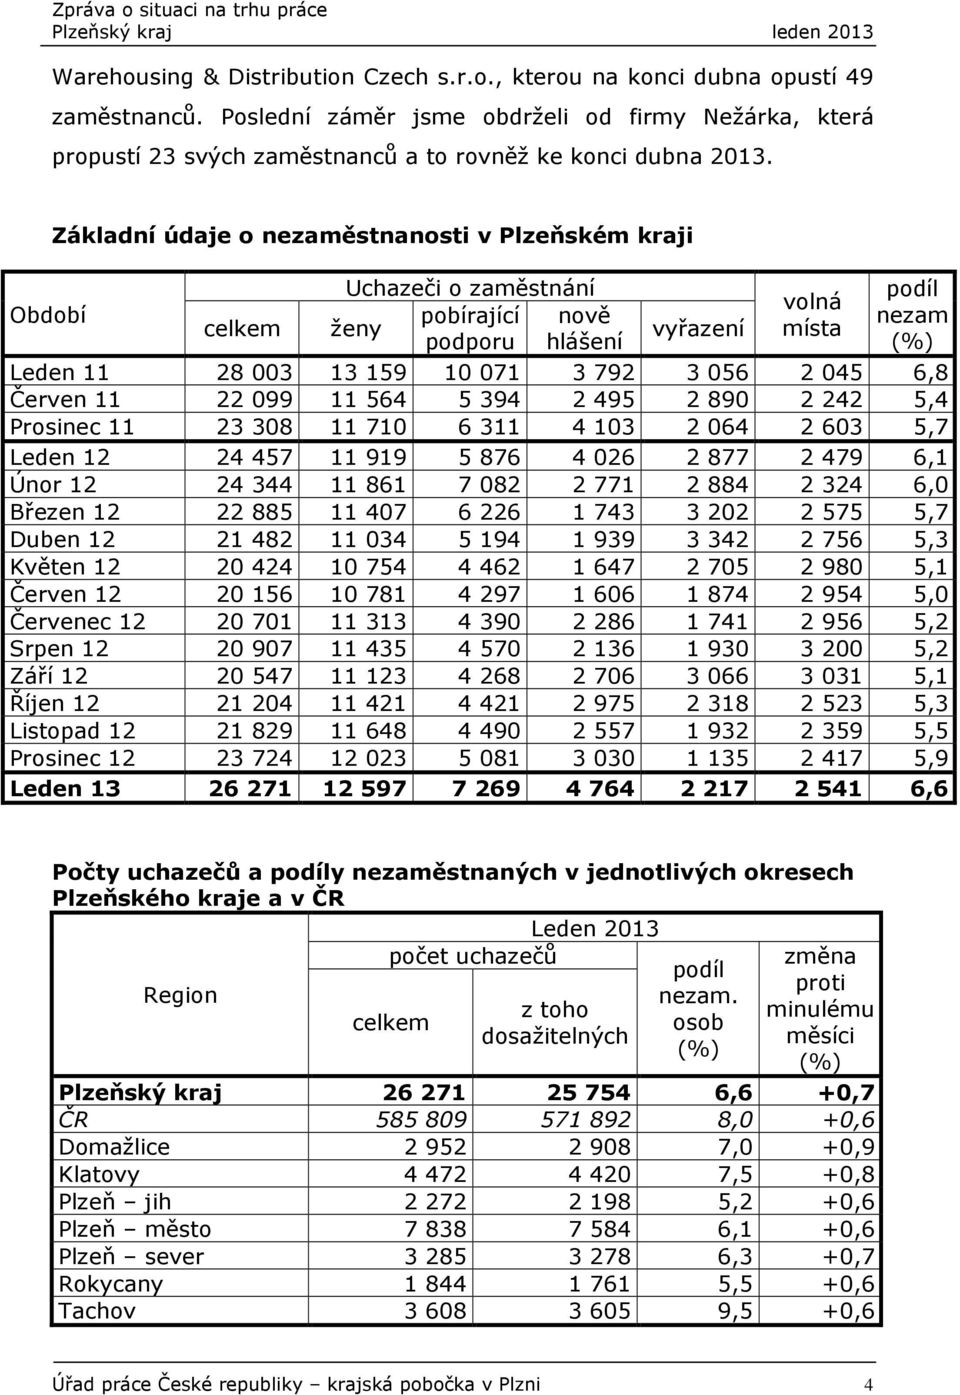 Období Základní údaje o nezaměstnanosti v Plzeňském kraji celkem Uchazeči o zaměstnání pobírající nově ženy podporu hlášení vyřazení volná místa podíl nezam (%) Leden 11 28 003 13 159 10 071 3 792 3